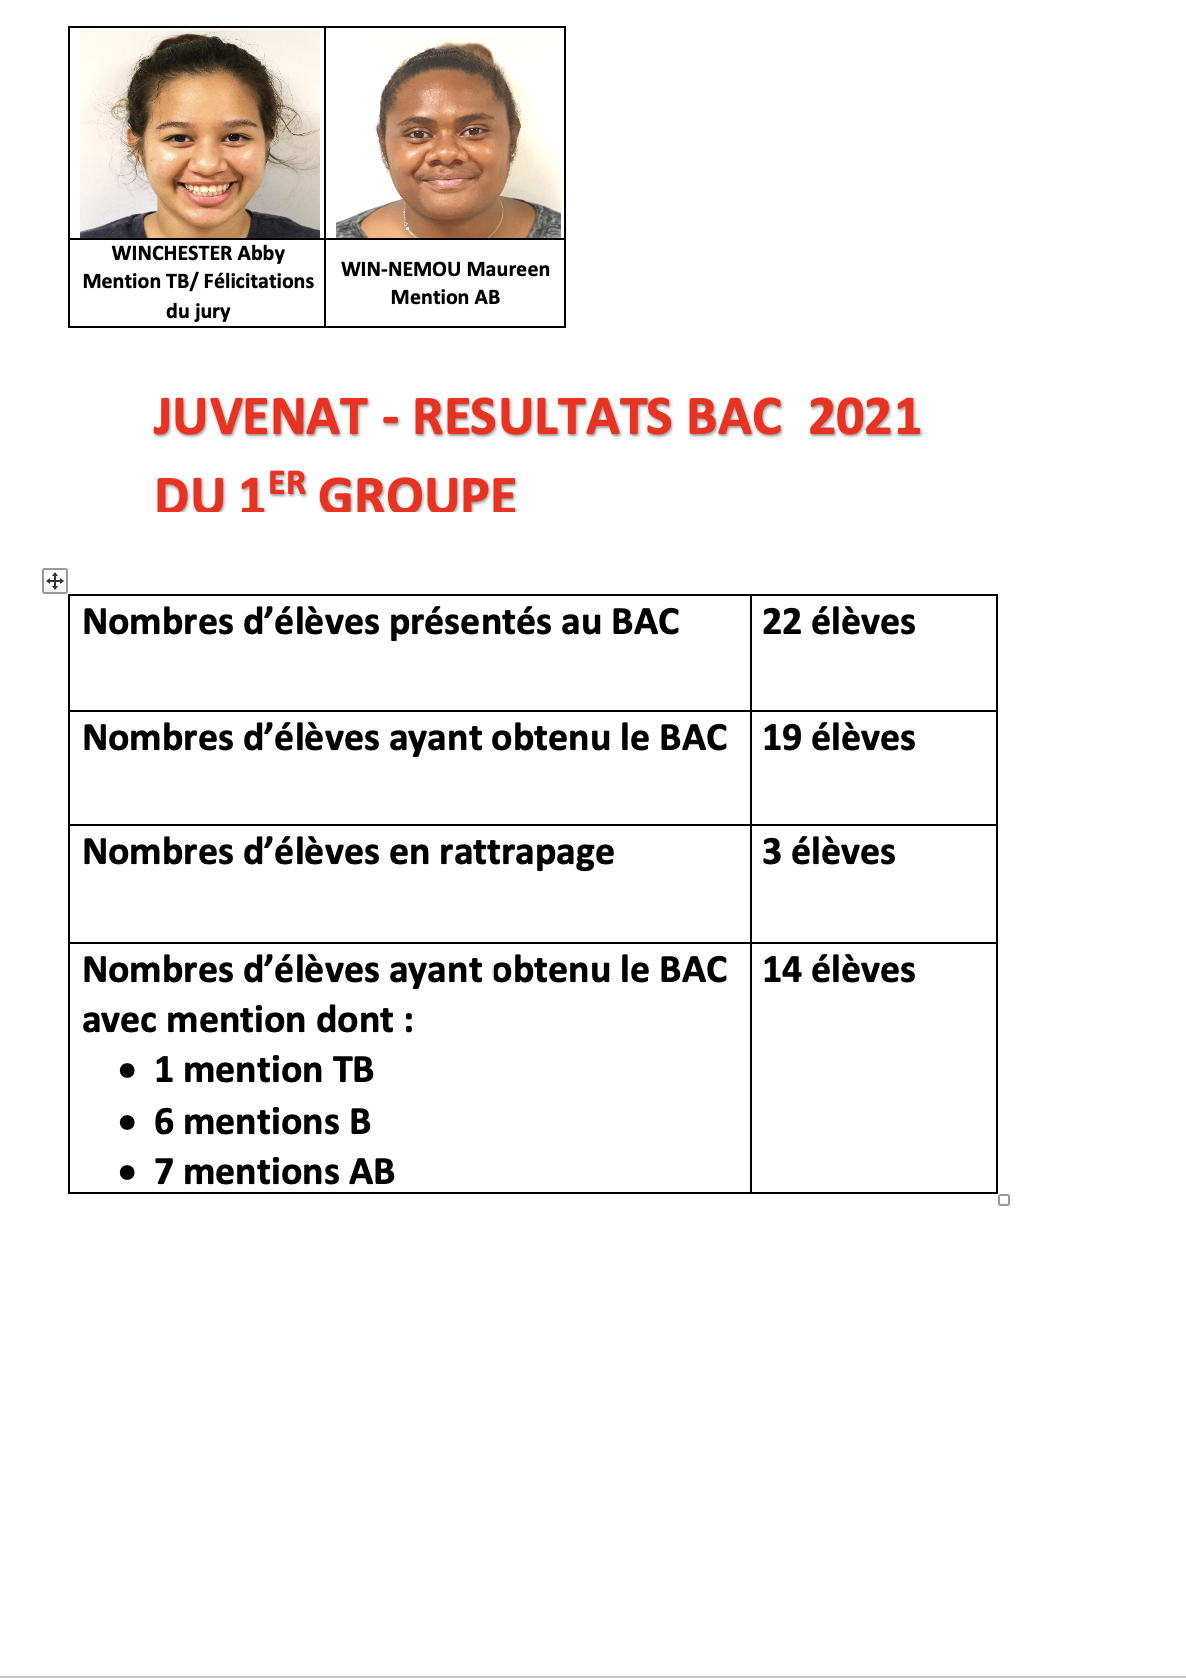 Les résultats du Bac 2021 (1er groupe) du Juvenat